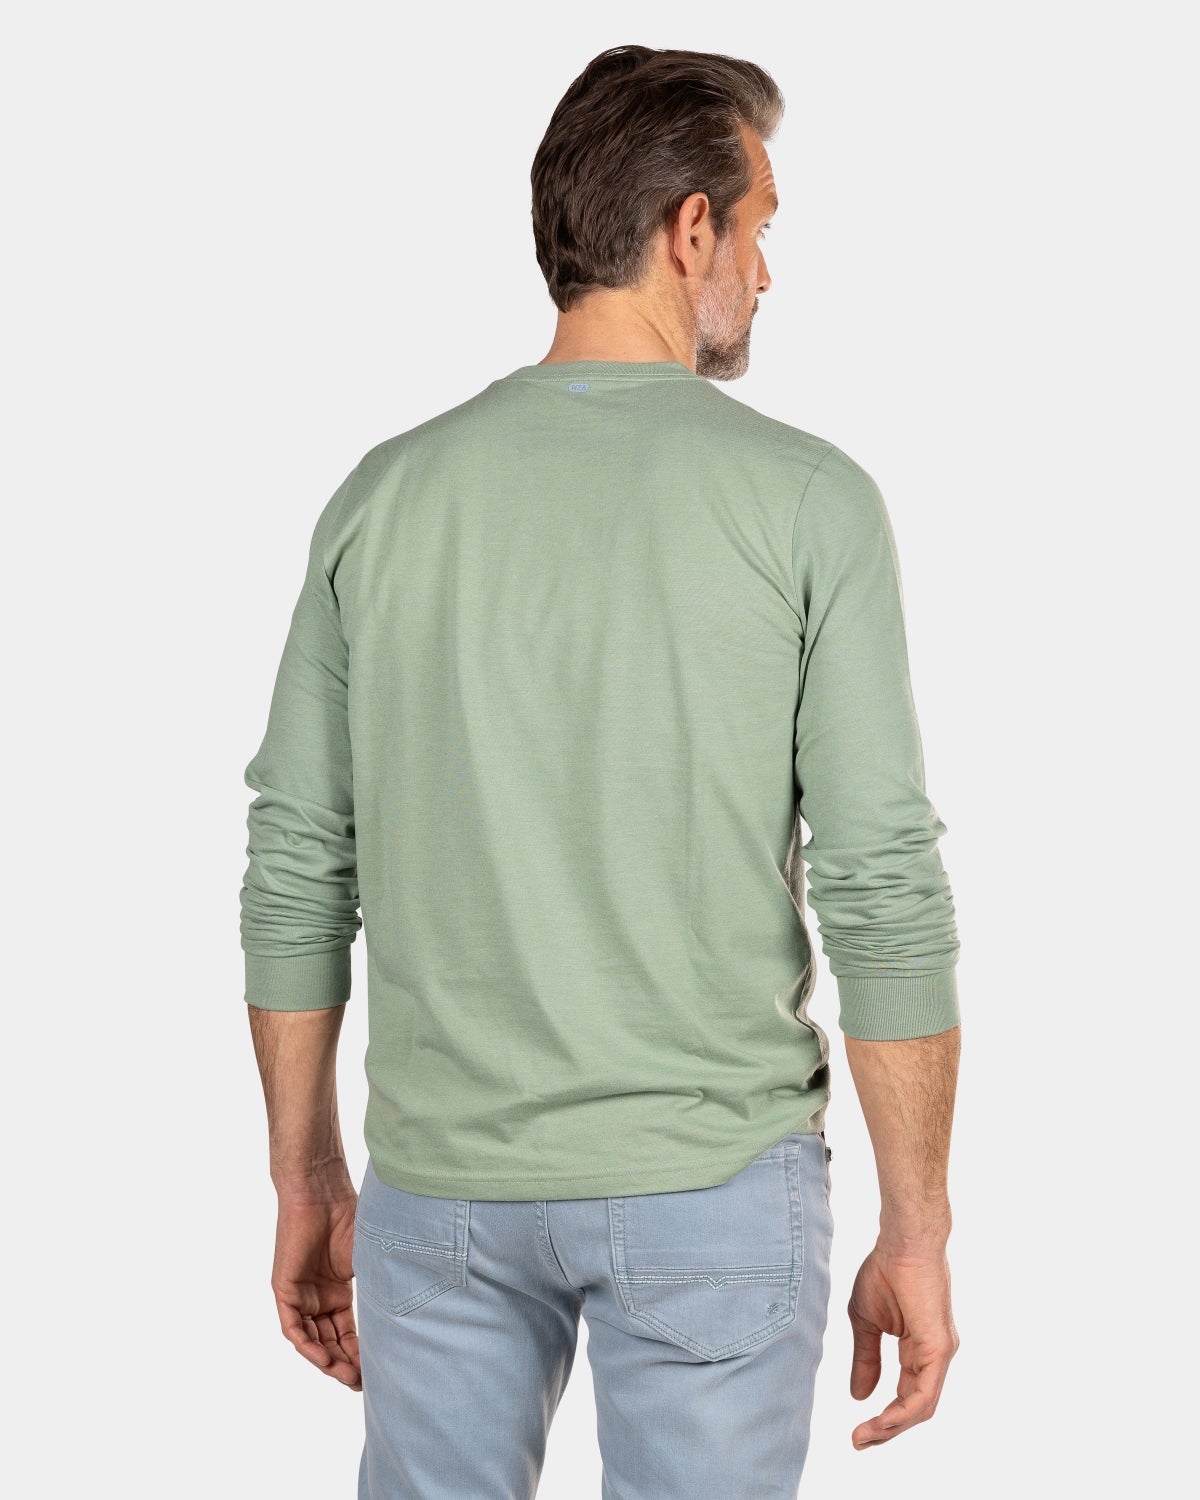 Grünes Langarmshirt mit Rundhalsausschnitt - Sage